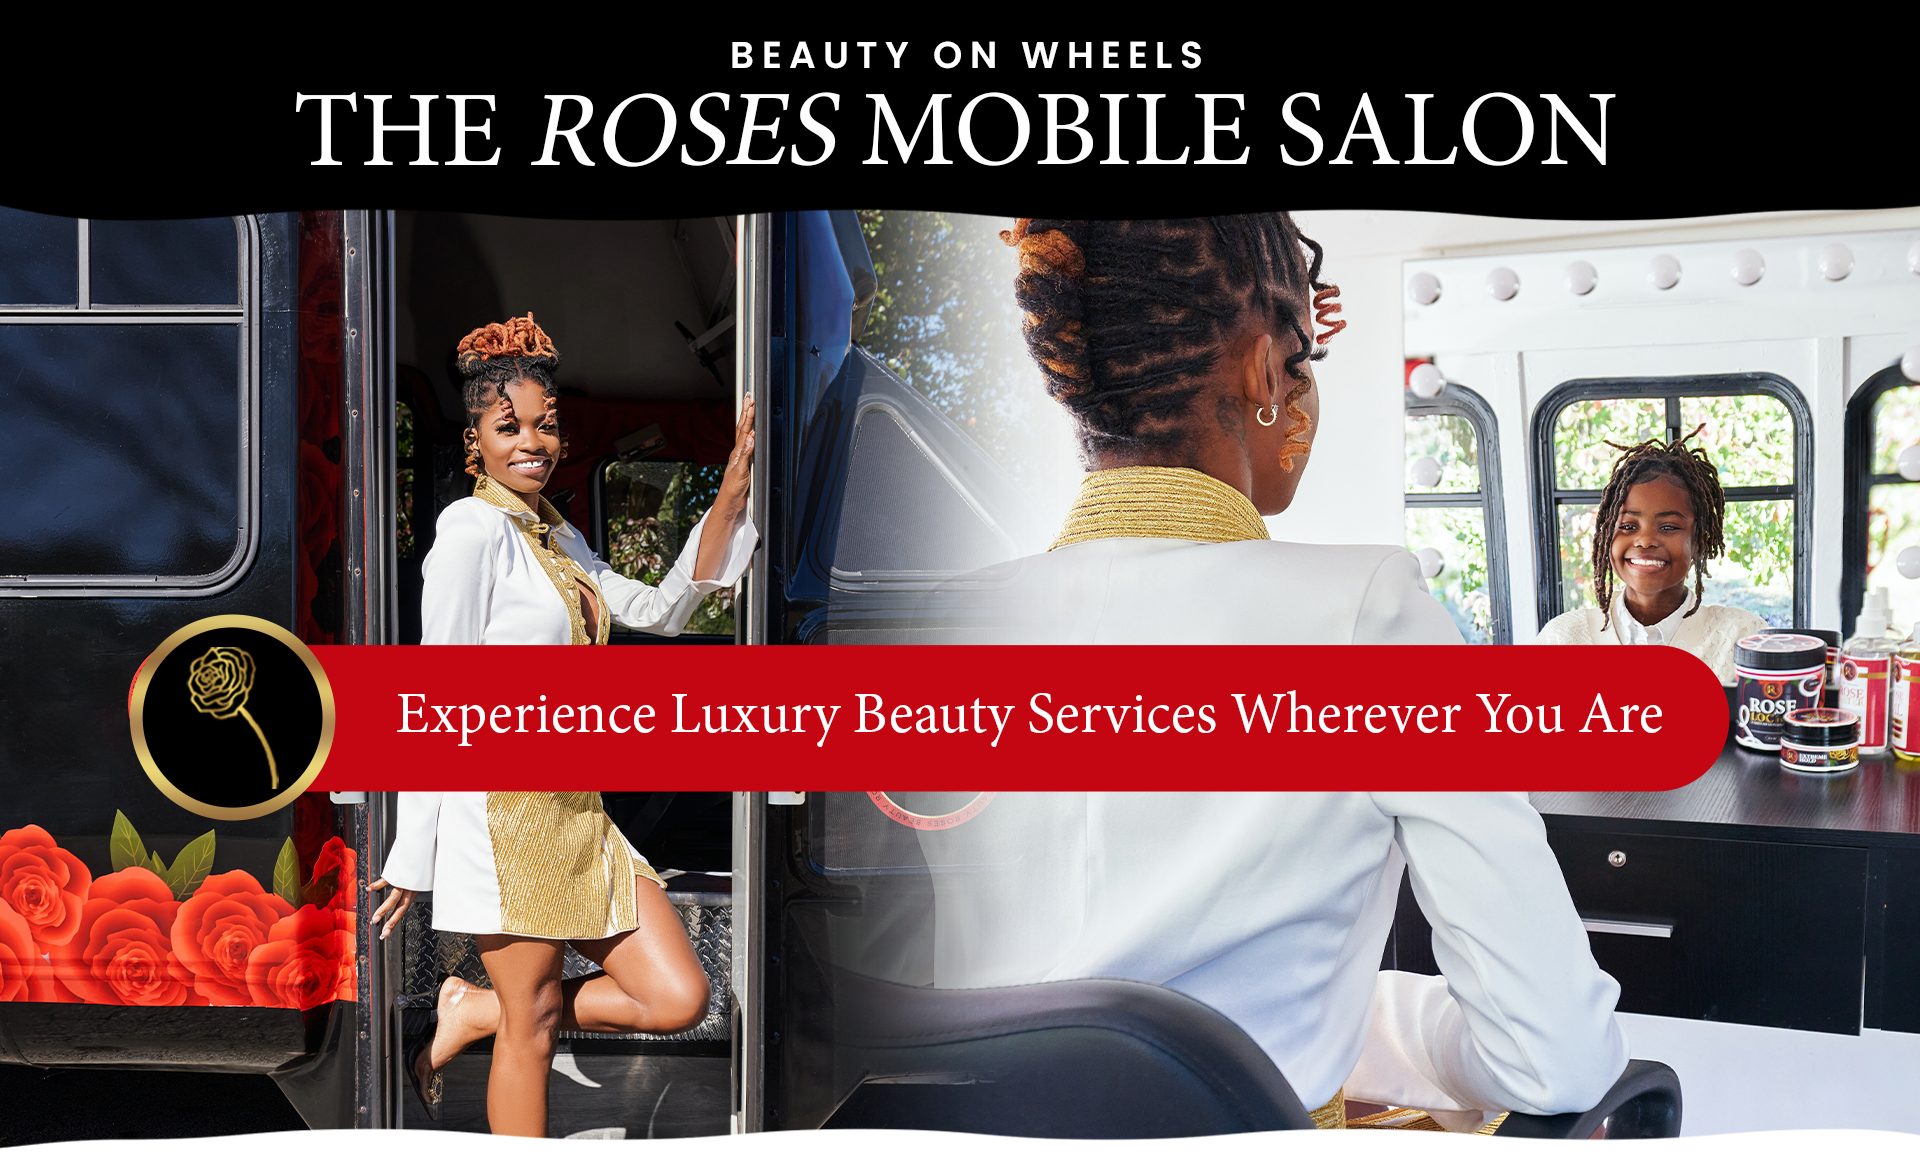 Book our mobile salon